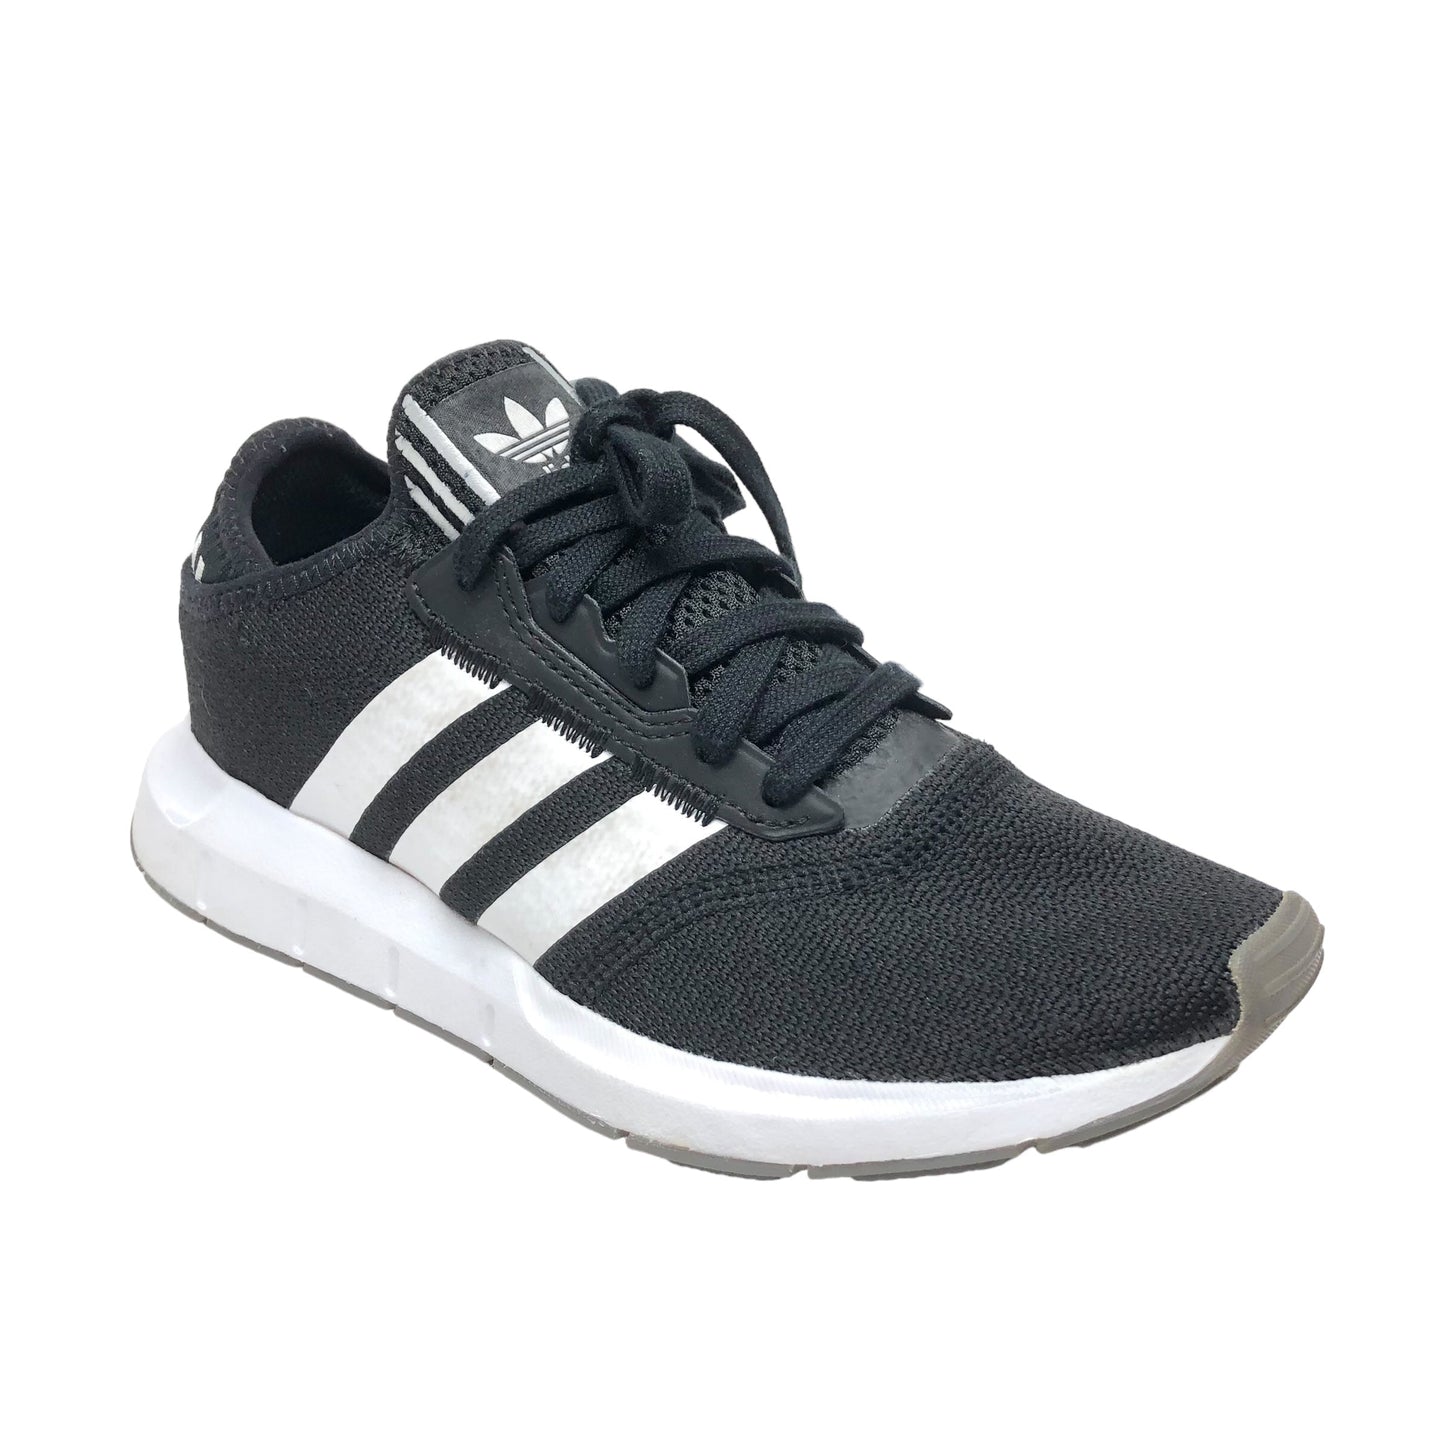 Black & White Shoes Athletic Adidas, Size 7